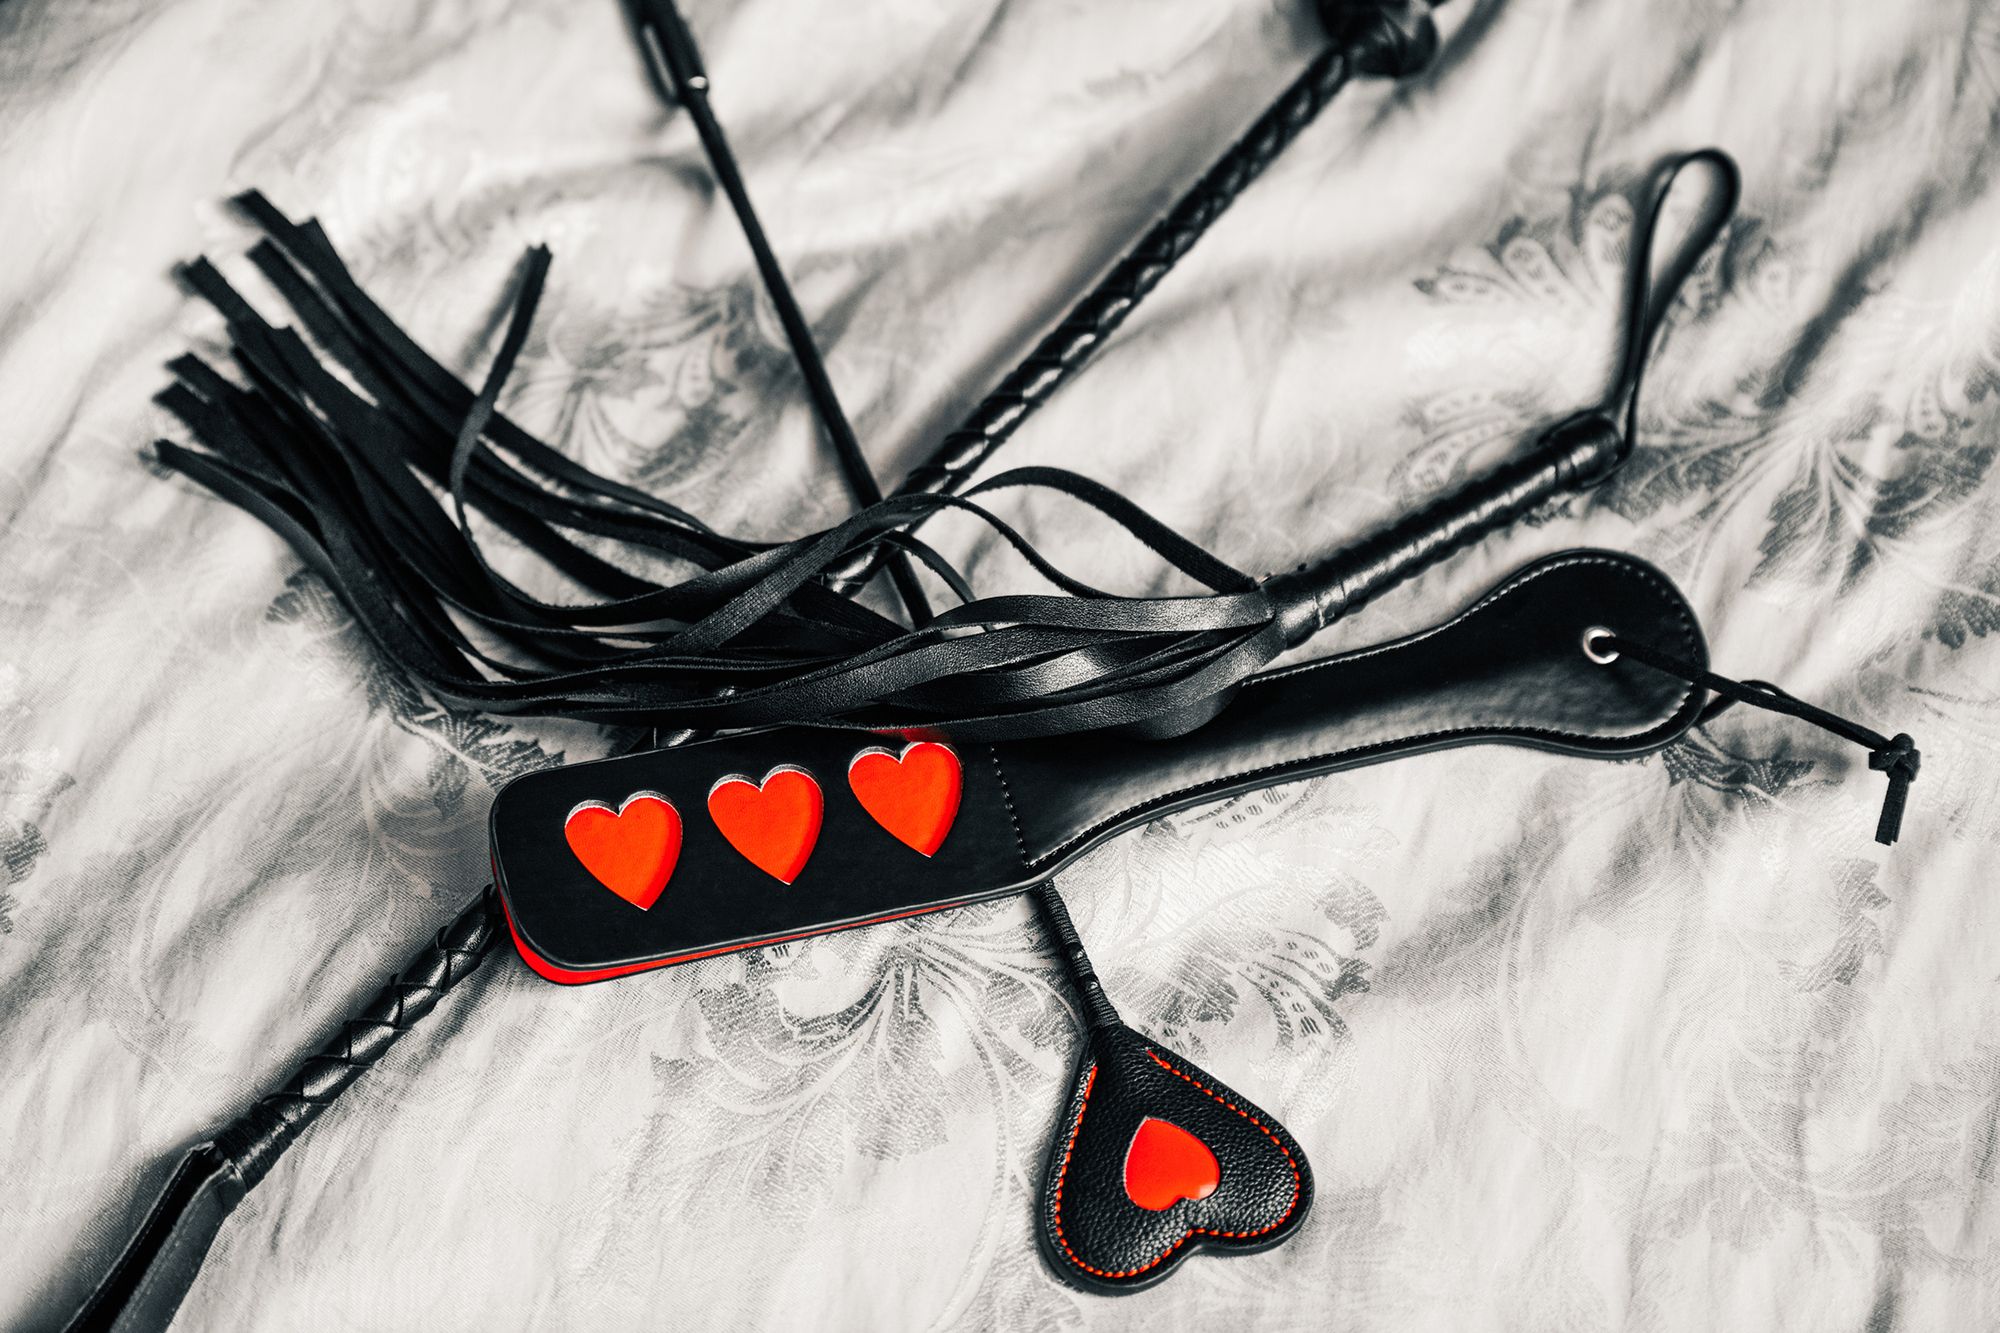 Schwarze Peitsche, Schwarze Gerte mit rotem Herz und schwarzes Paddle mit drei roten Herzen auf Federn